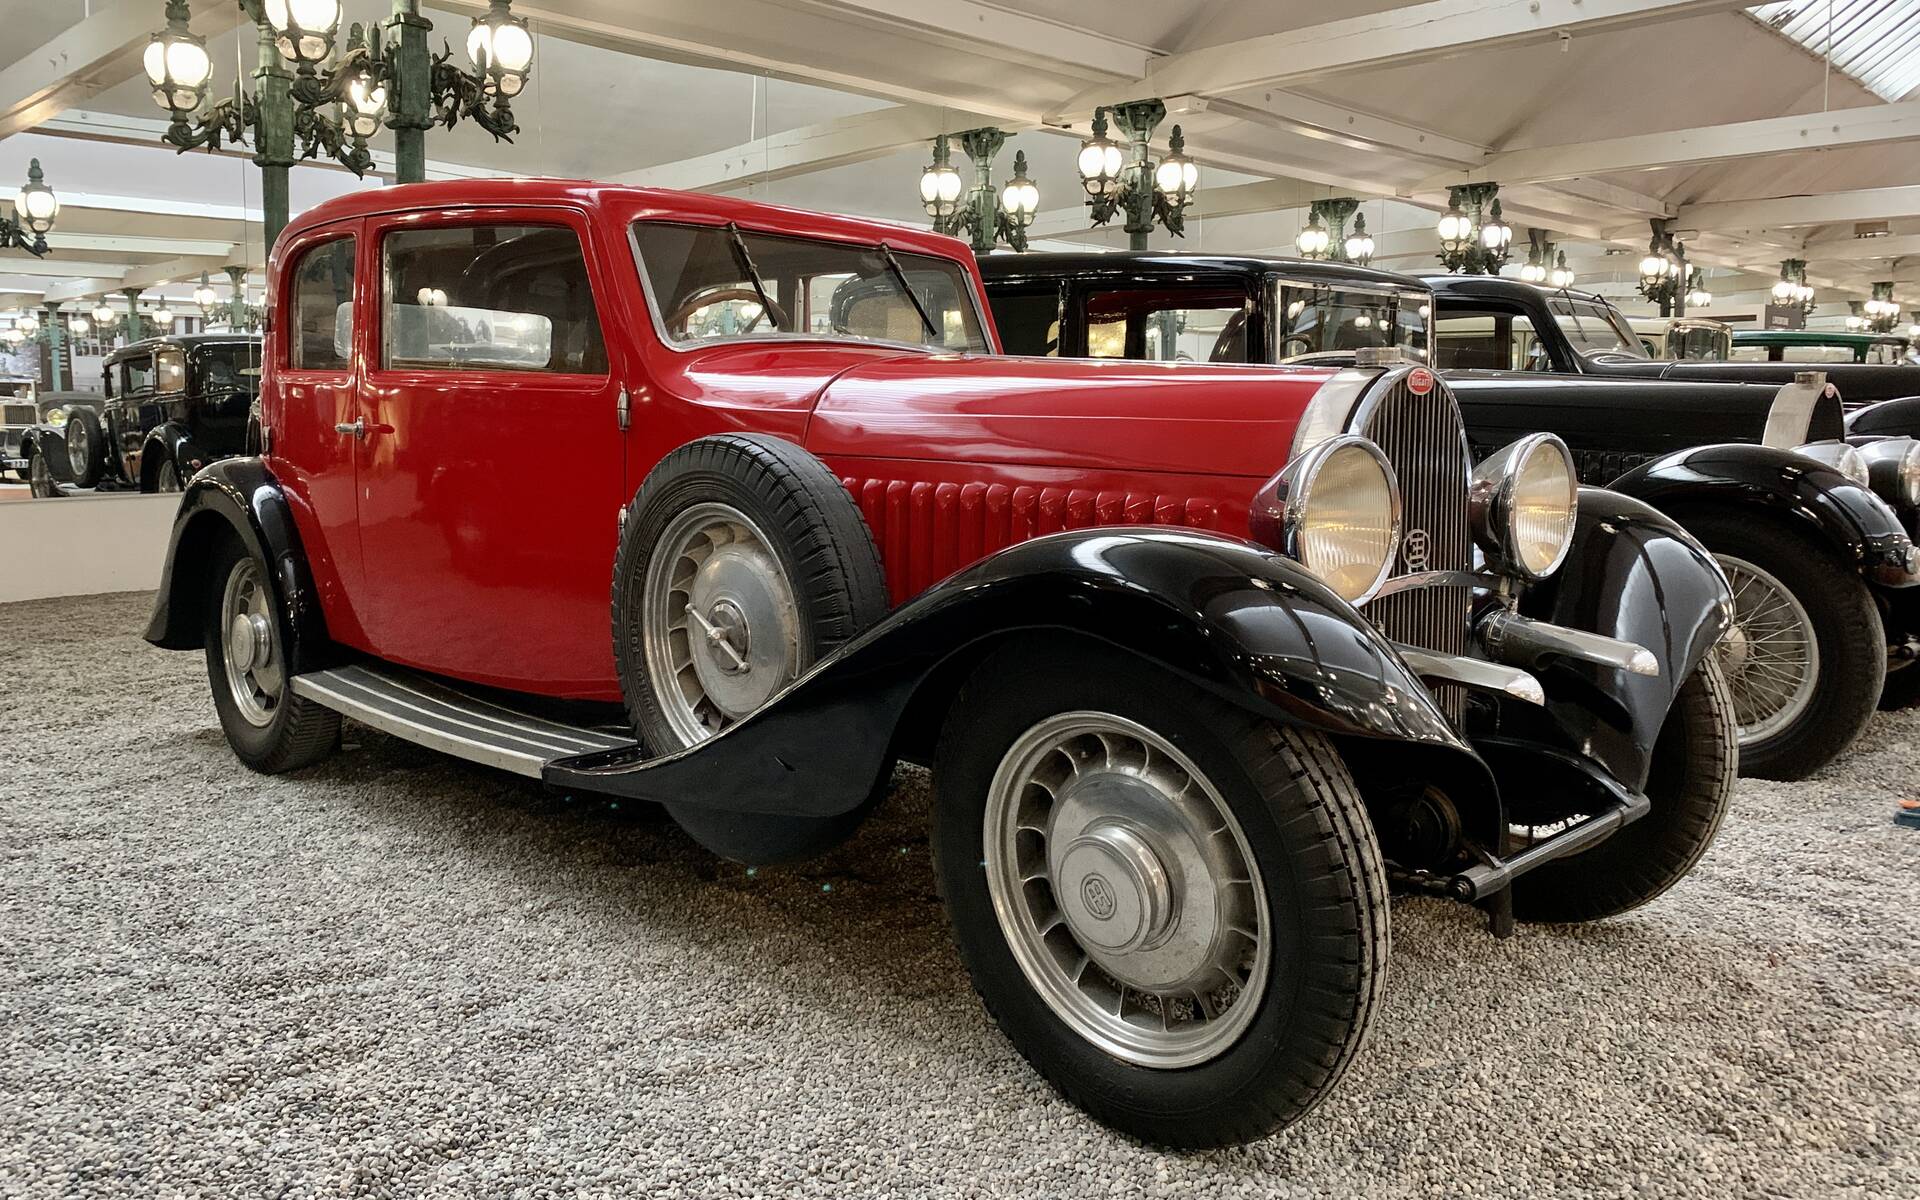 En photos : une centaine de Bugatti réunies dans un même musée 503058-en-photos-des-dizaines-de-bugatti-reunies-dans-un-meme-musee